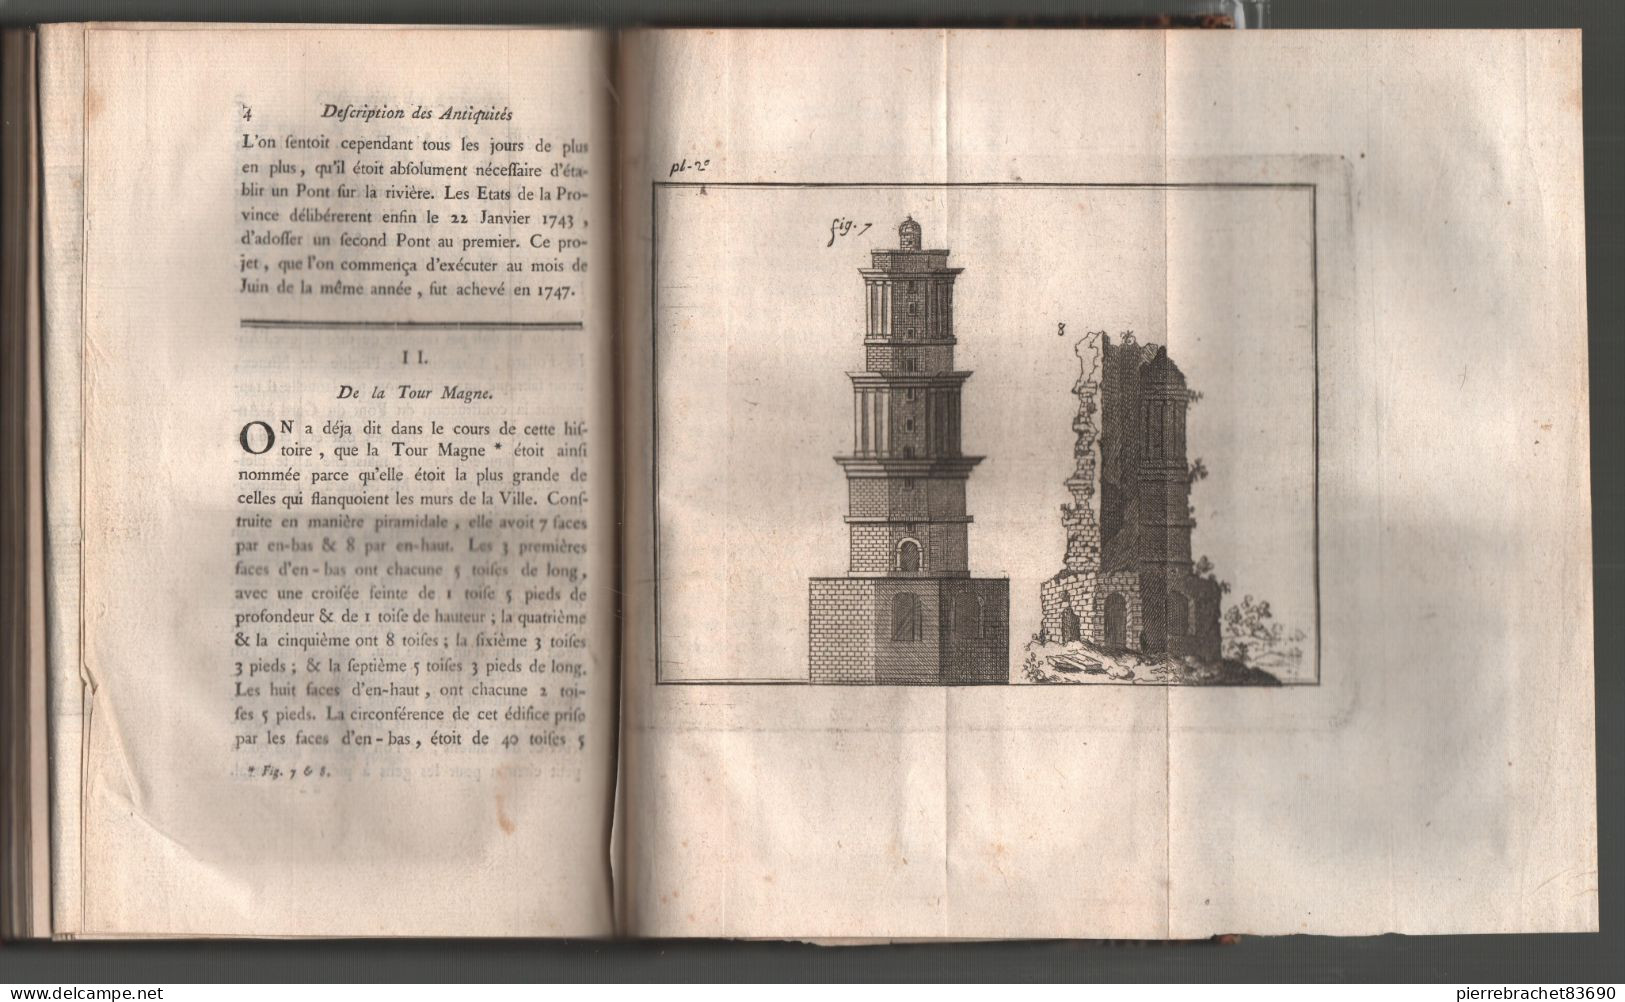 Maucomble. Histoire Abrégée De La Ville De Nîmes Avec La Description De Ses Antiquités. 1767 - Non Classés